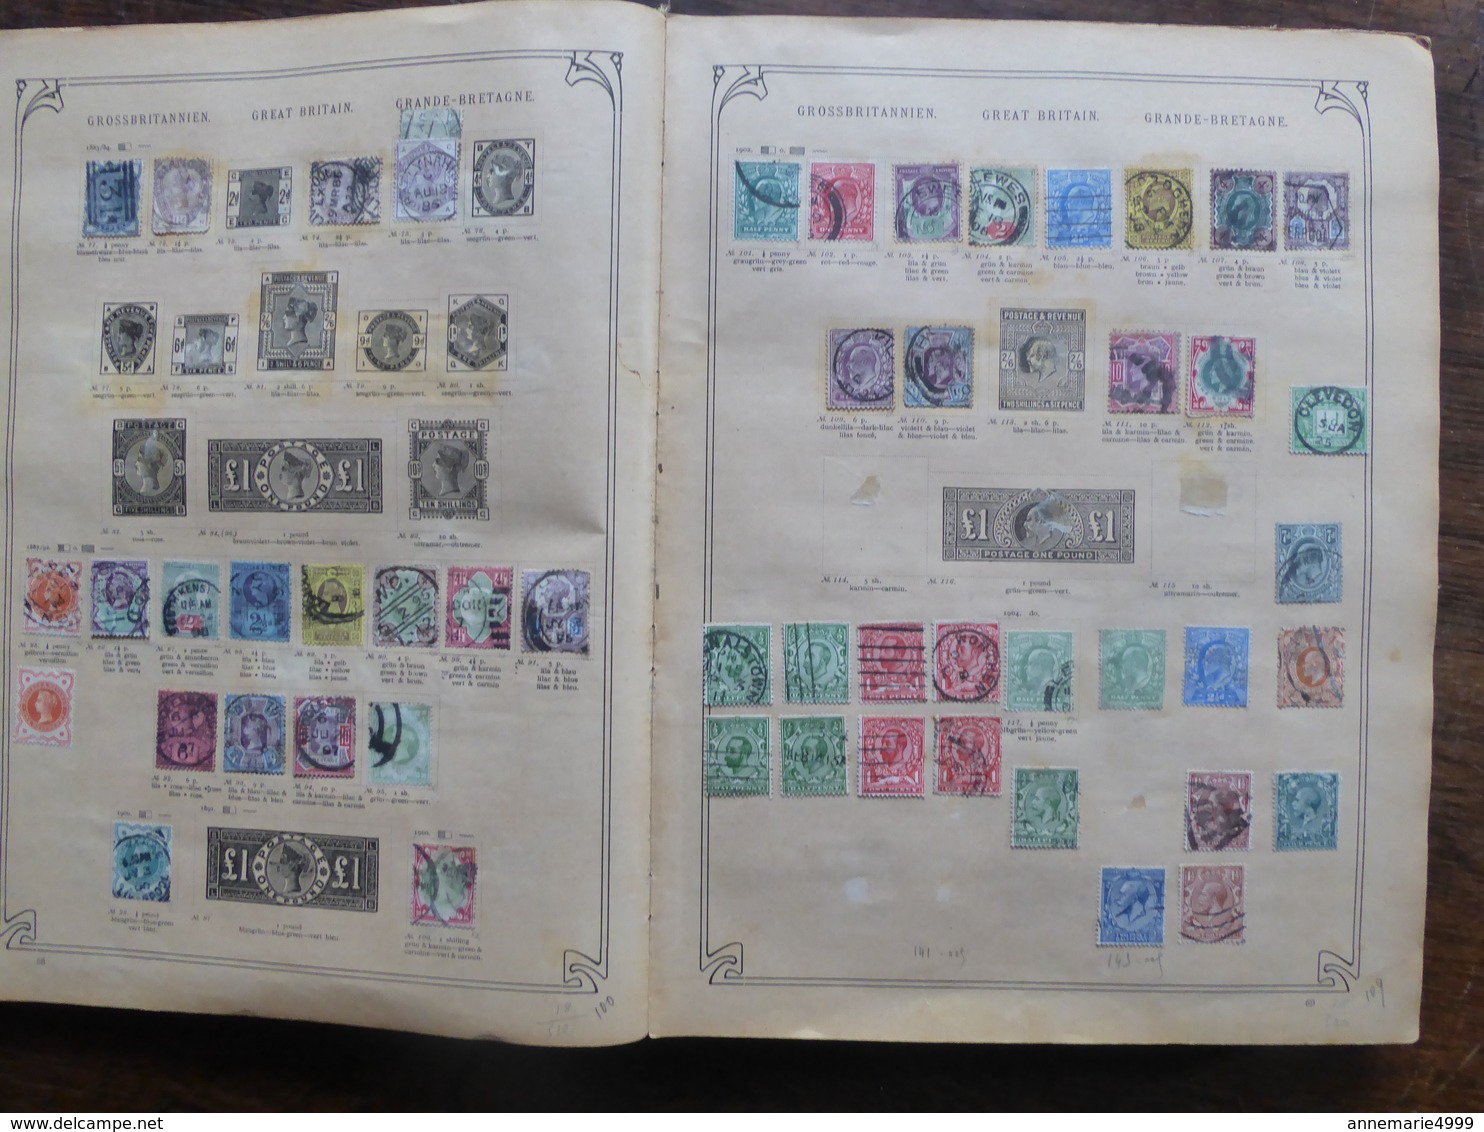 Vieil album collection Monde plusieurs milliers de timbres Voir tous les scans